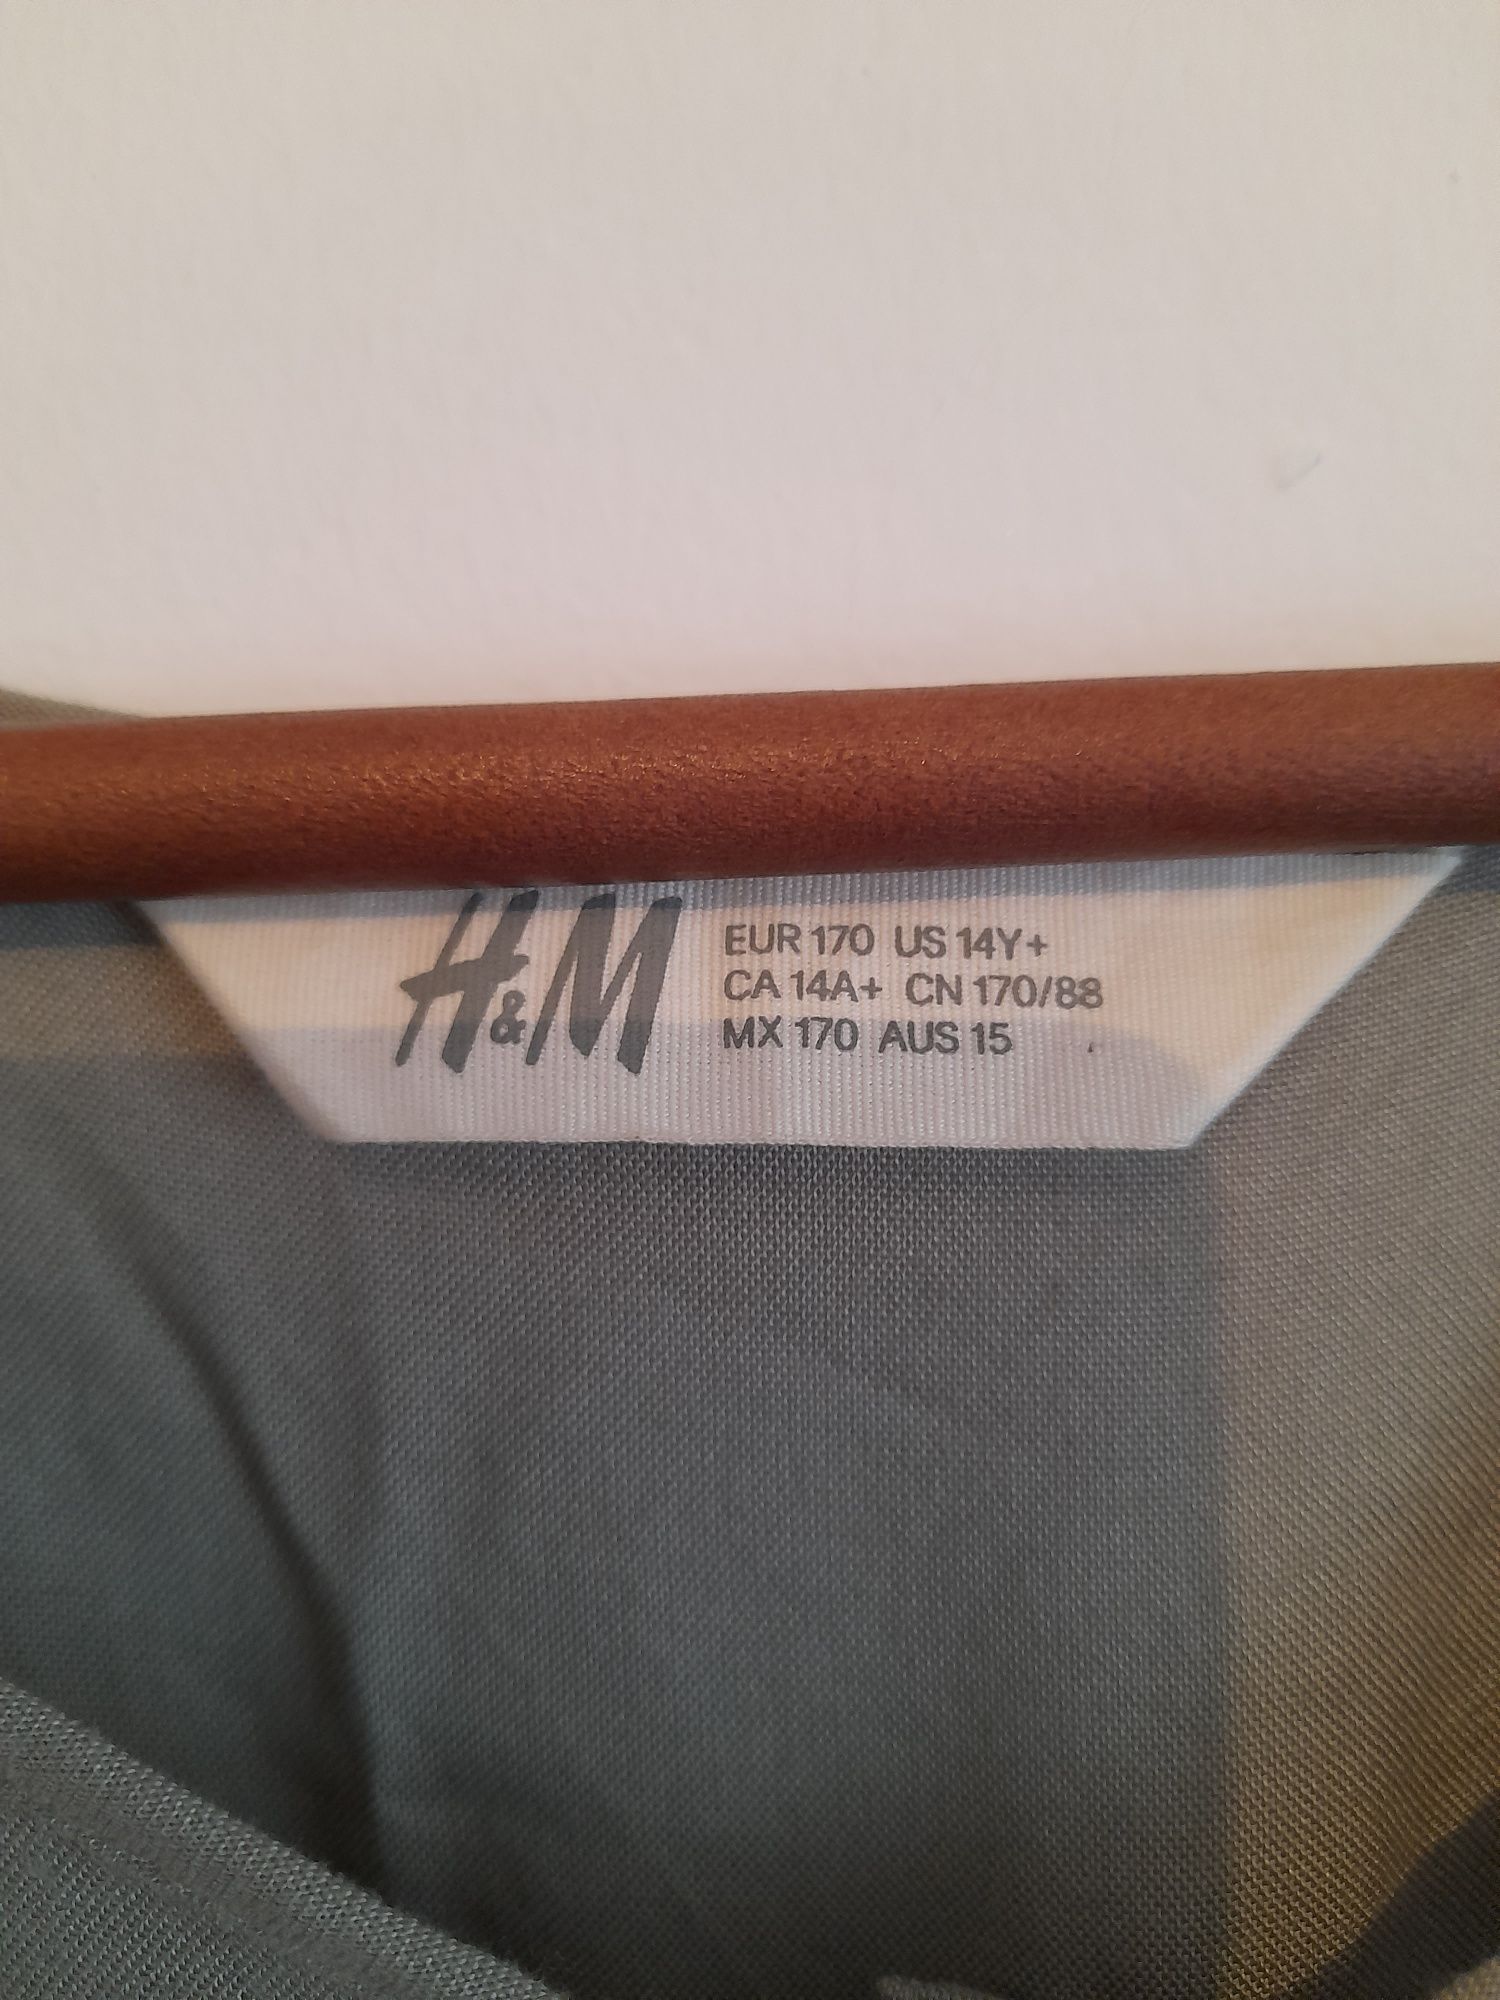 Macacão H&M Tamanho 1.70cm